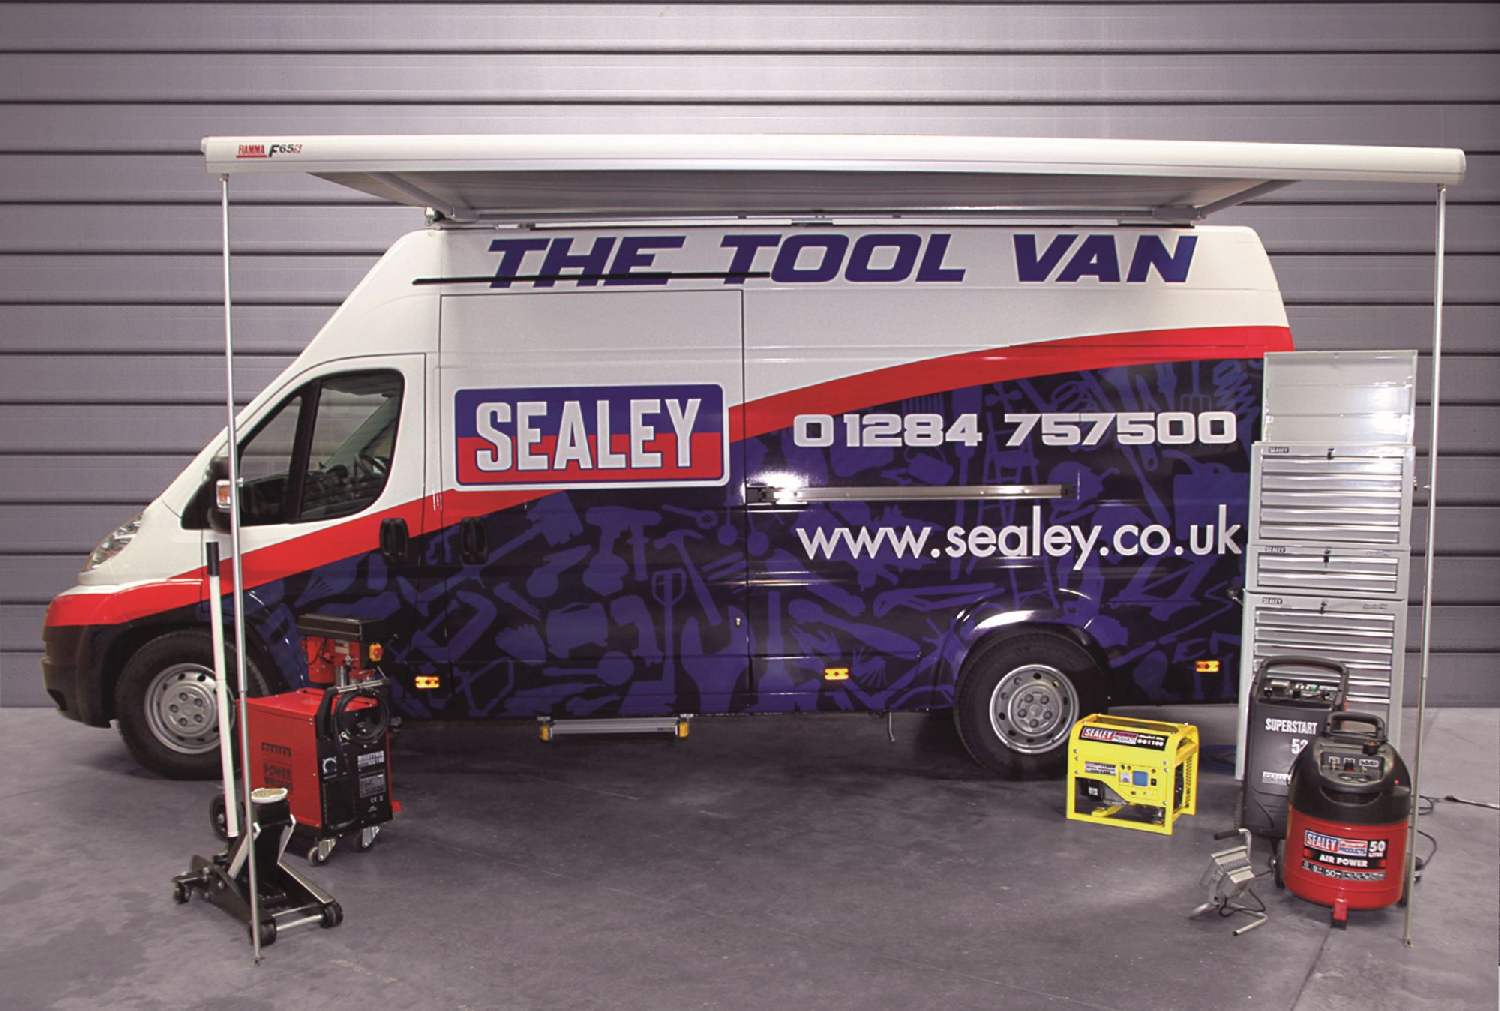 The Sealey Tool Van